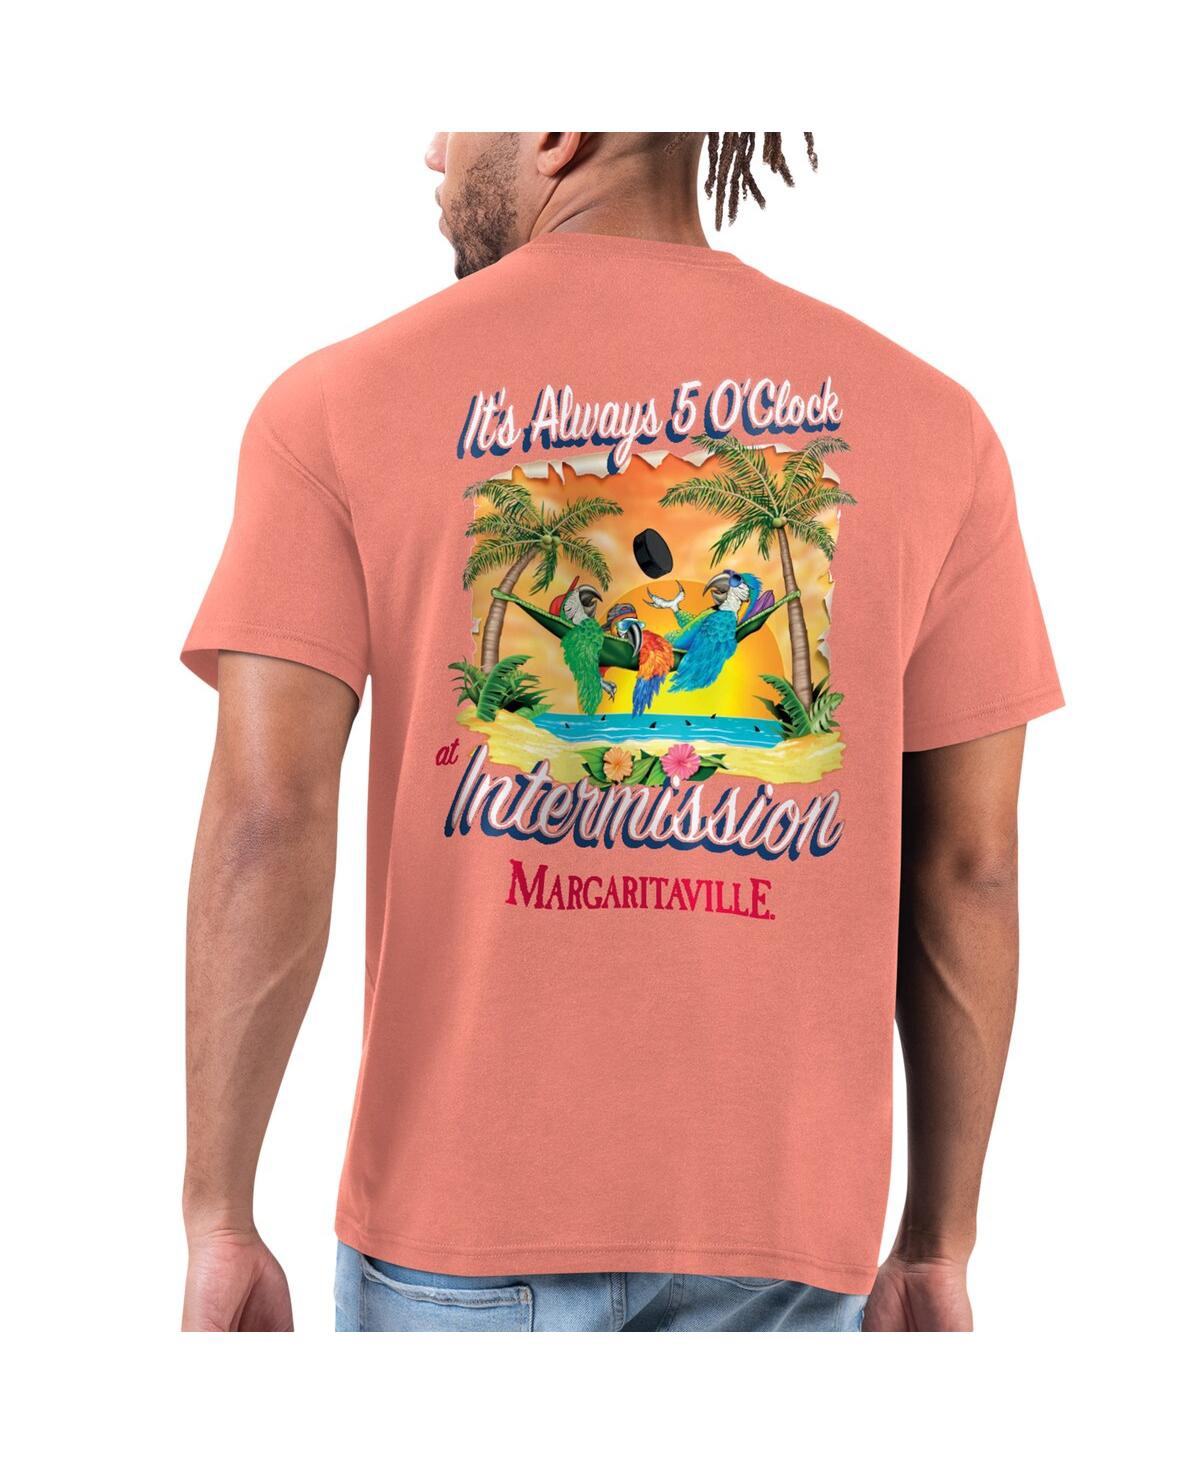 Shop Margaritaville Men's Orange Florida Panthers T-shirt